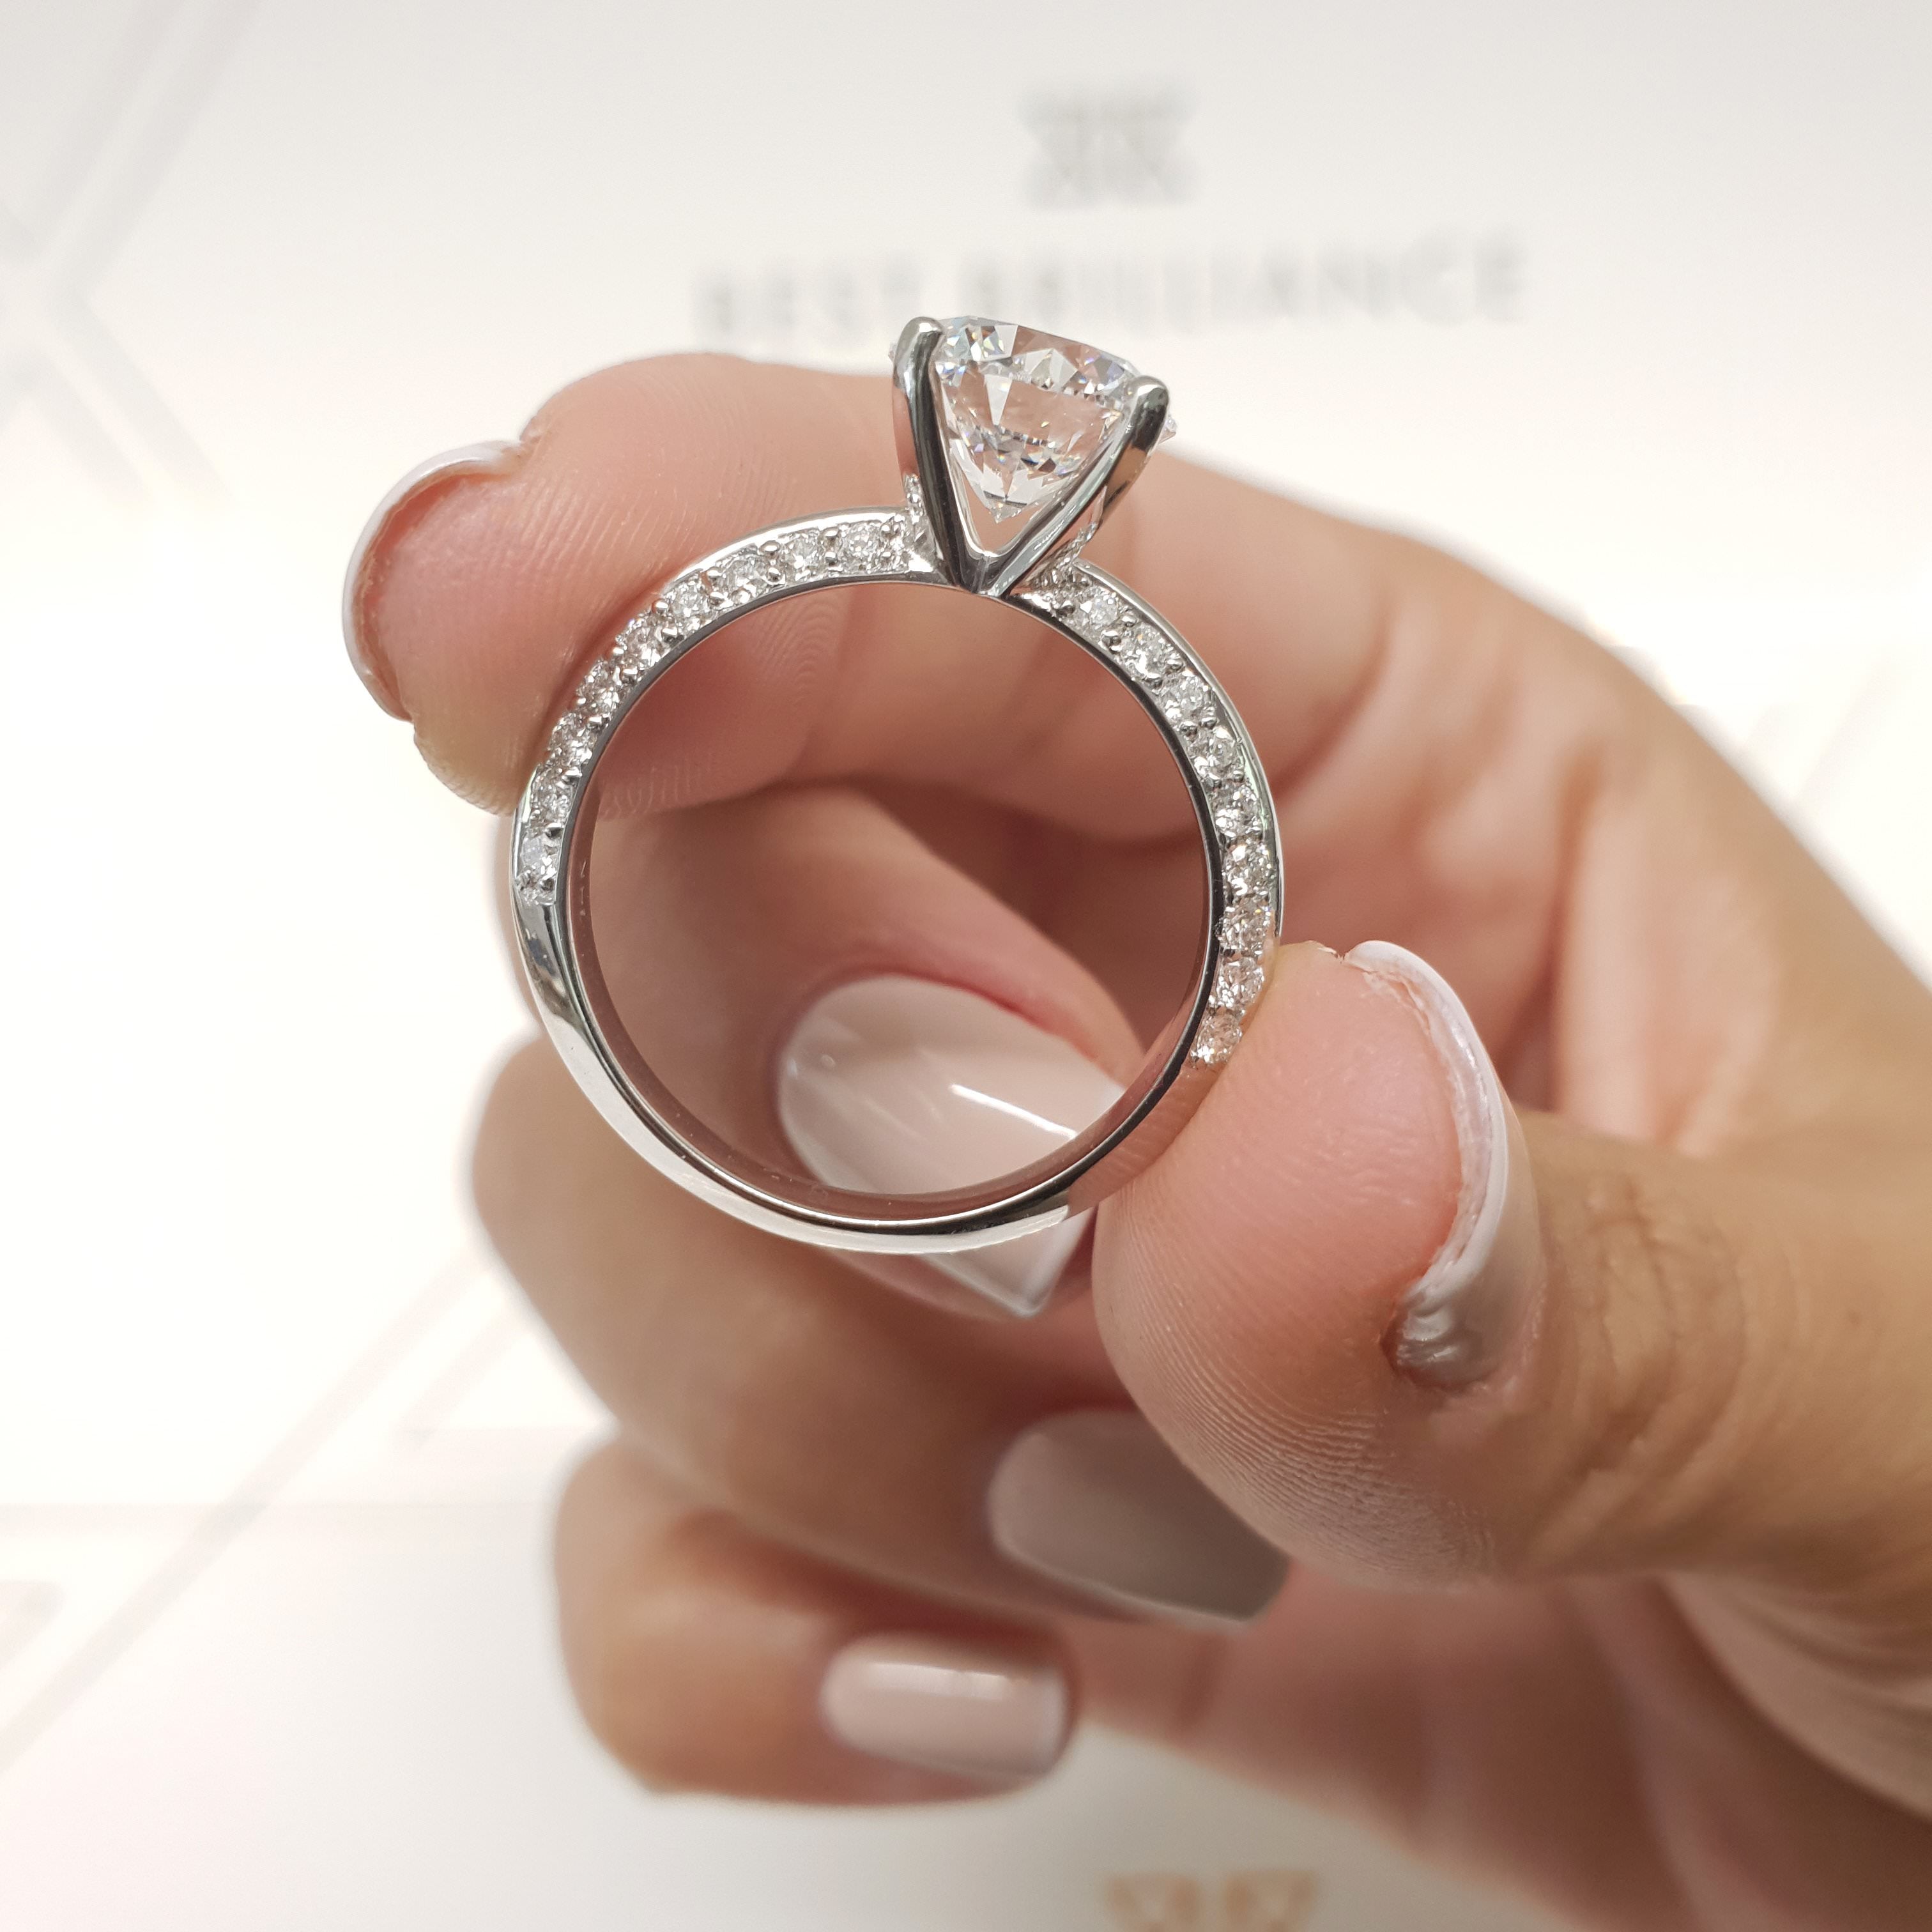 Ariana Diamond Engagement Ring -18K White Gold